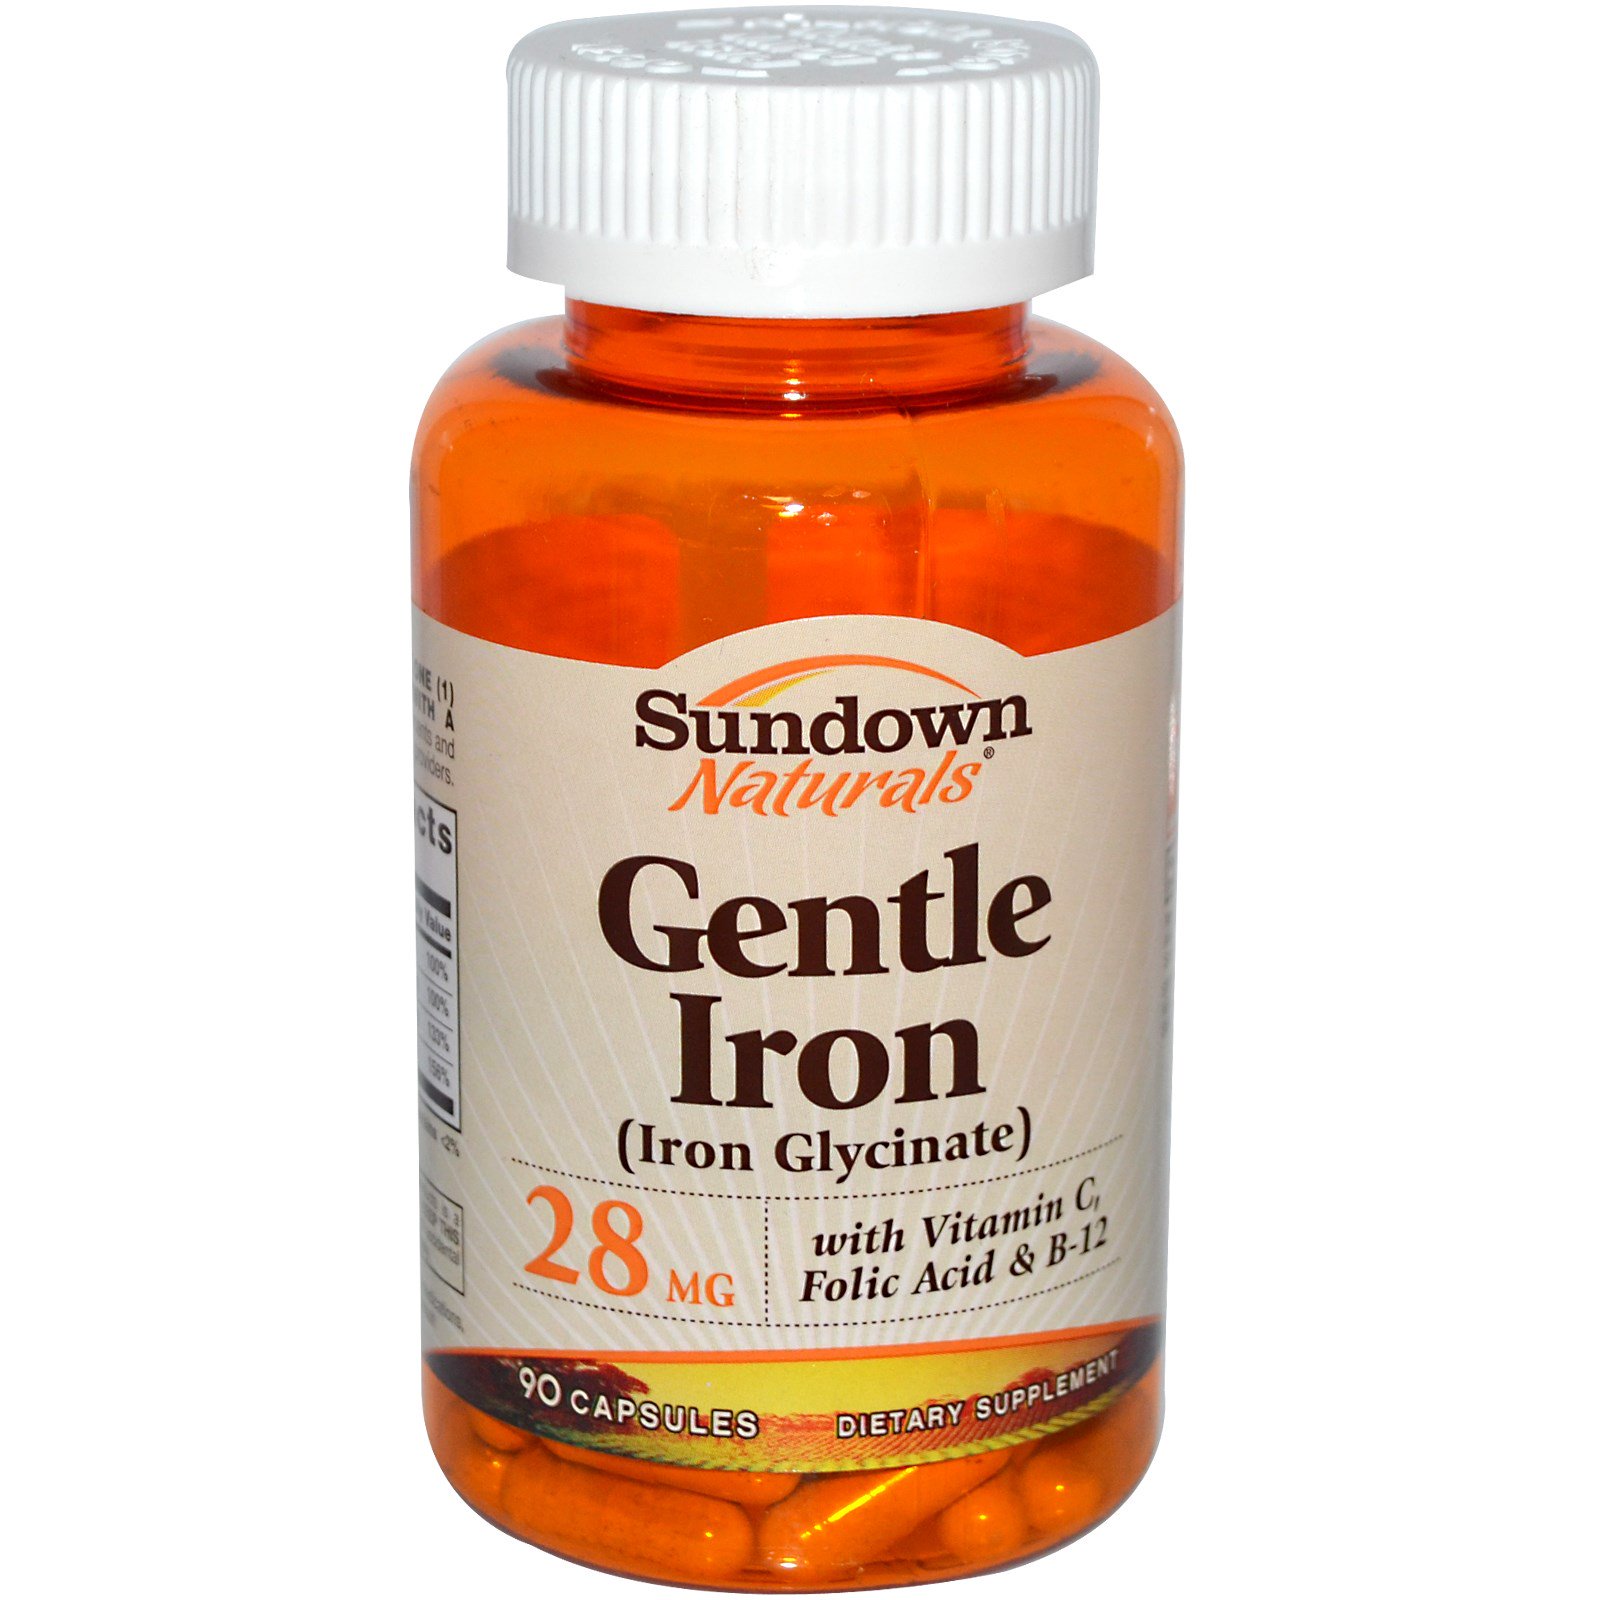 Инструкция gentle iron 25. Gentle Iron Glycinate 28 MG. Gentle Iron 28mg Iron Glycinate. Best naturals Iron 65 мг 90 Capsules. Железо Sundown naturals.